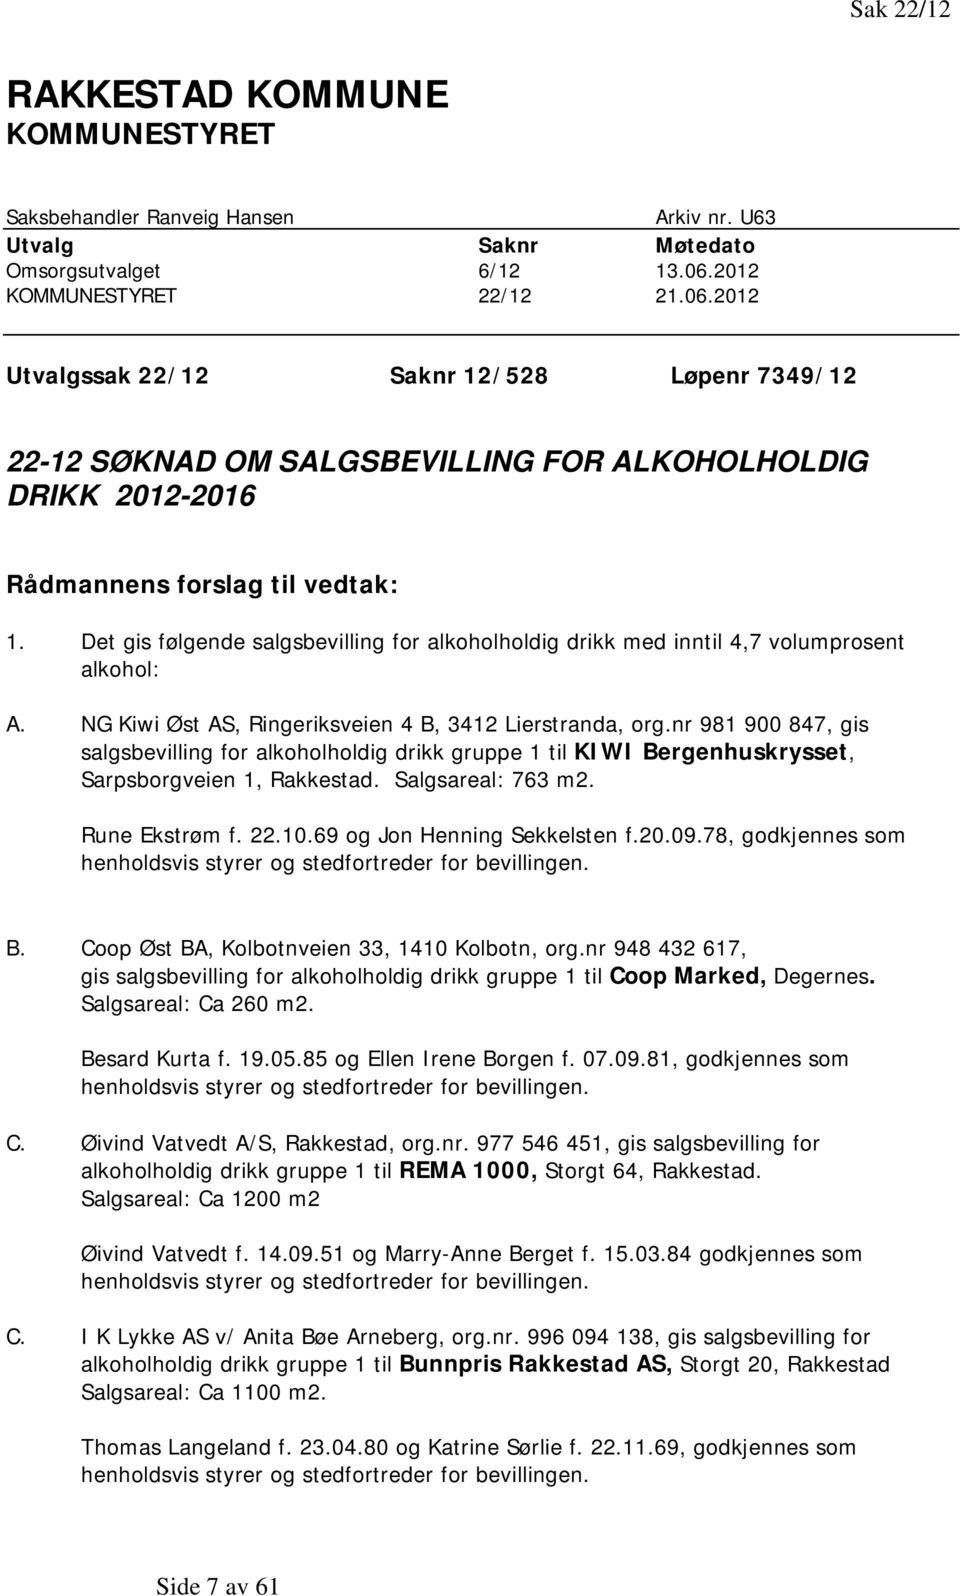 Det gis følgende salgsbevilling for alkoholholdig drikk med inntil 4,7 volumprosent alkohol: A. NG Kiwi Øst AS, Ringeriksveien 4 B, 3412 Lierstranda, org.